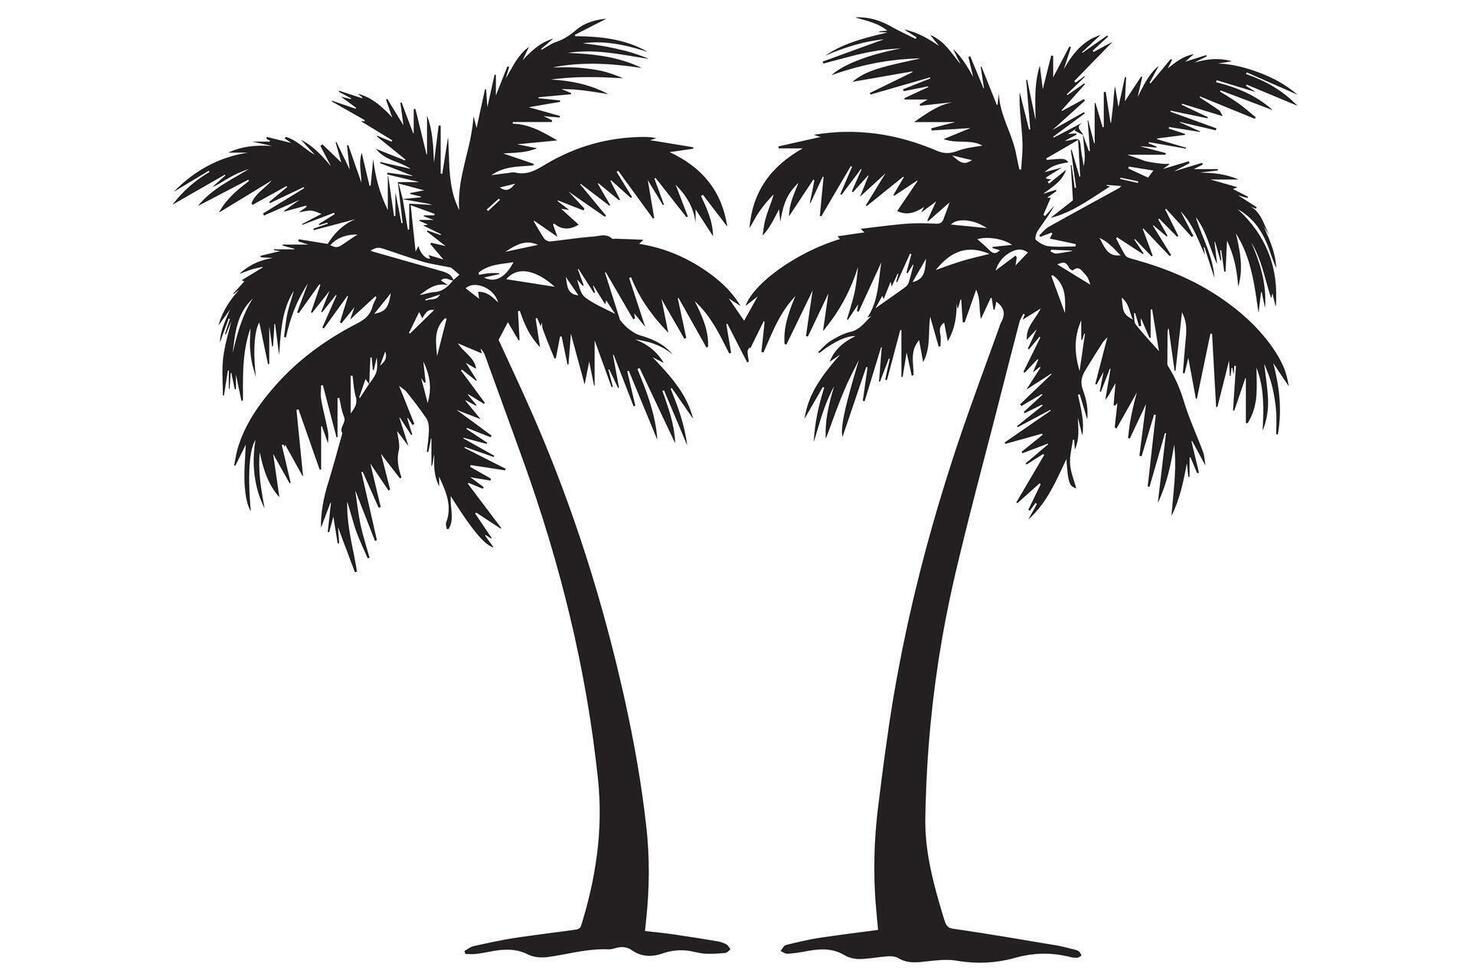 isto conjunto do detalhado Palma e coco árvore silhueta ilustrações vetor